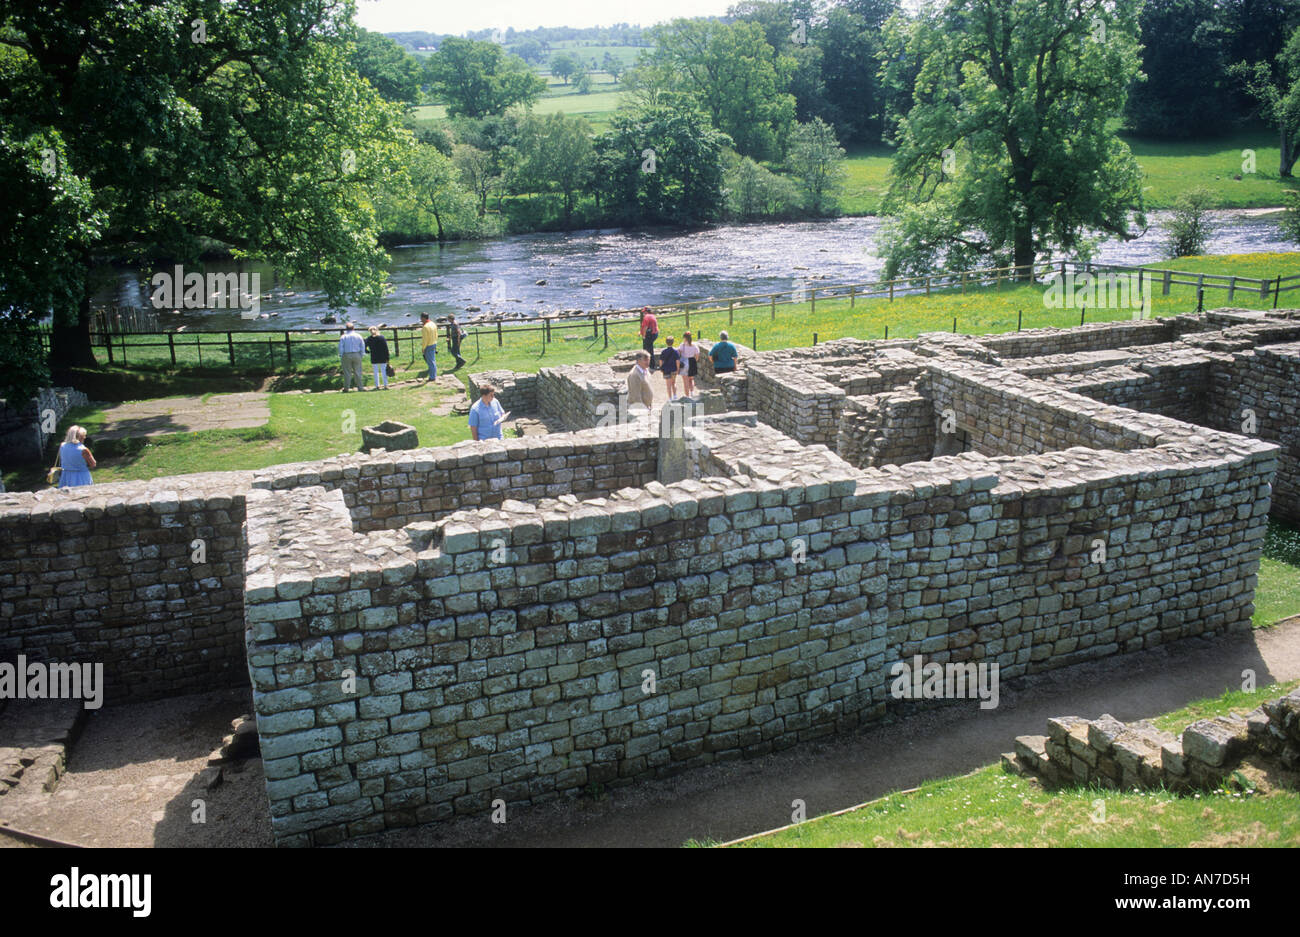 Chesters römischen Fort Badehaus Bad Haus Northumberland England UK englischen Forts Bad Häuser Badehäuser Flüsse ruinierte Ruine Stein Stockfoto